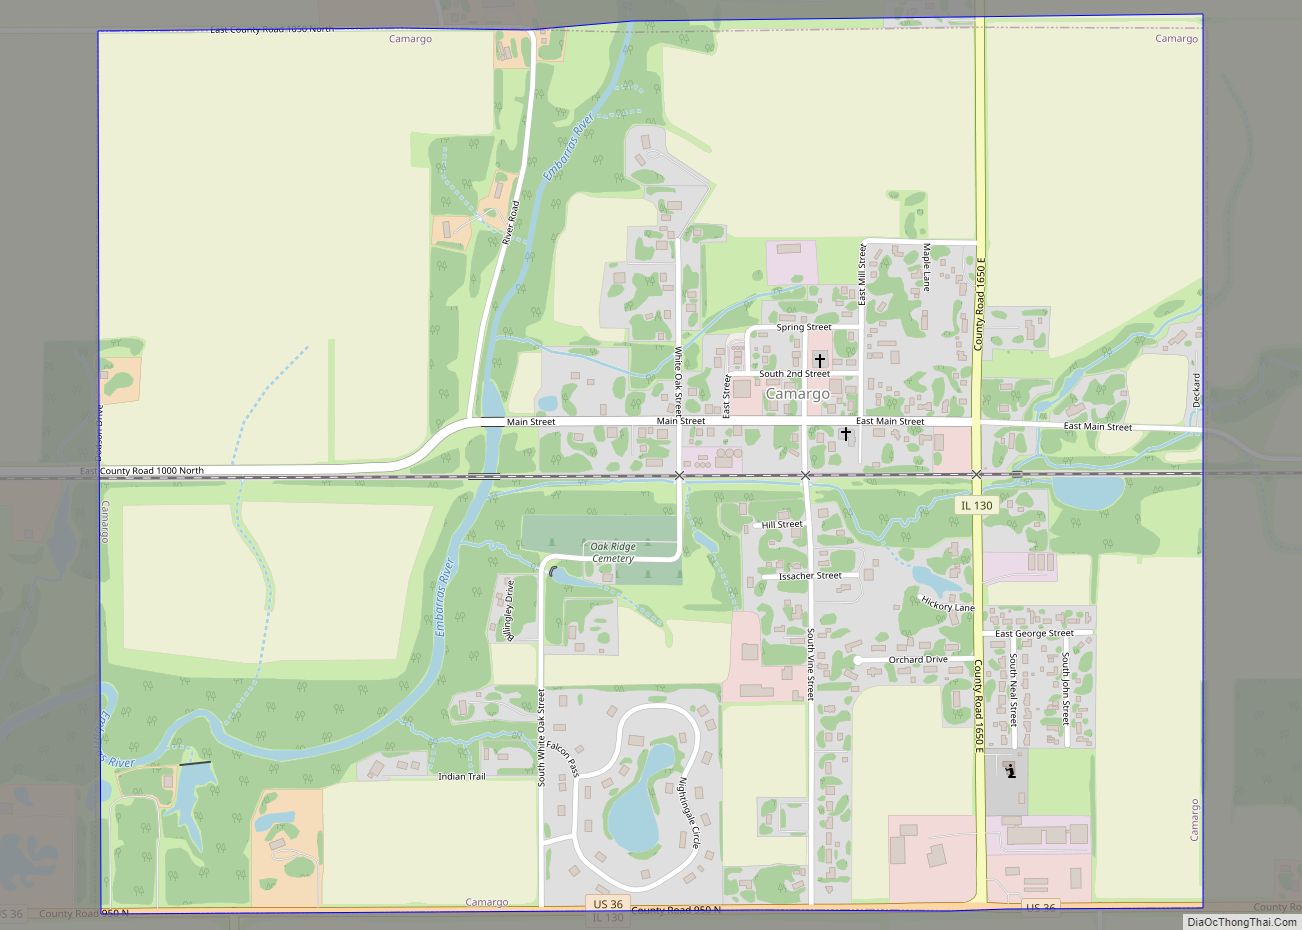 Map of Camargo village, Illinois